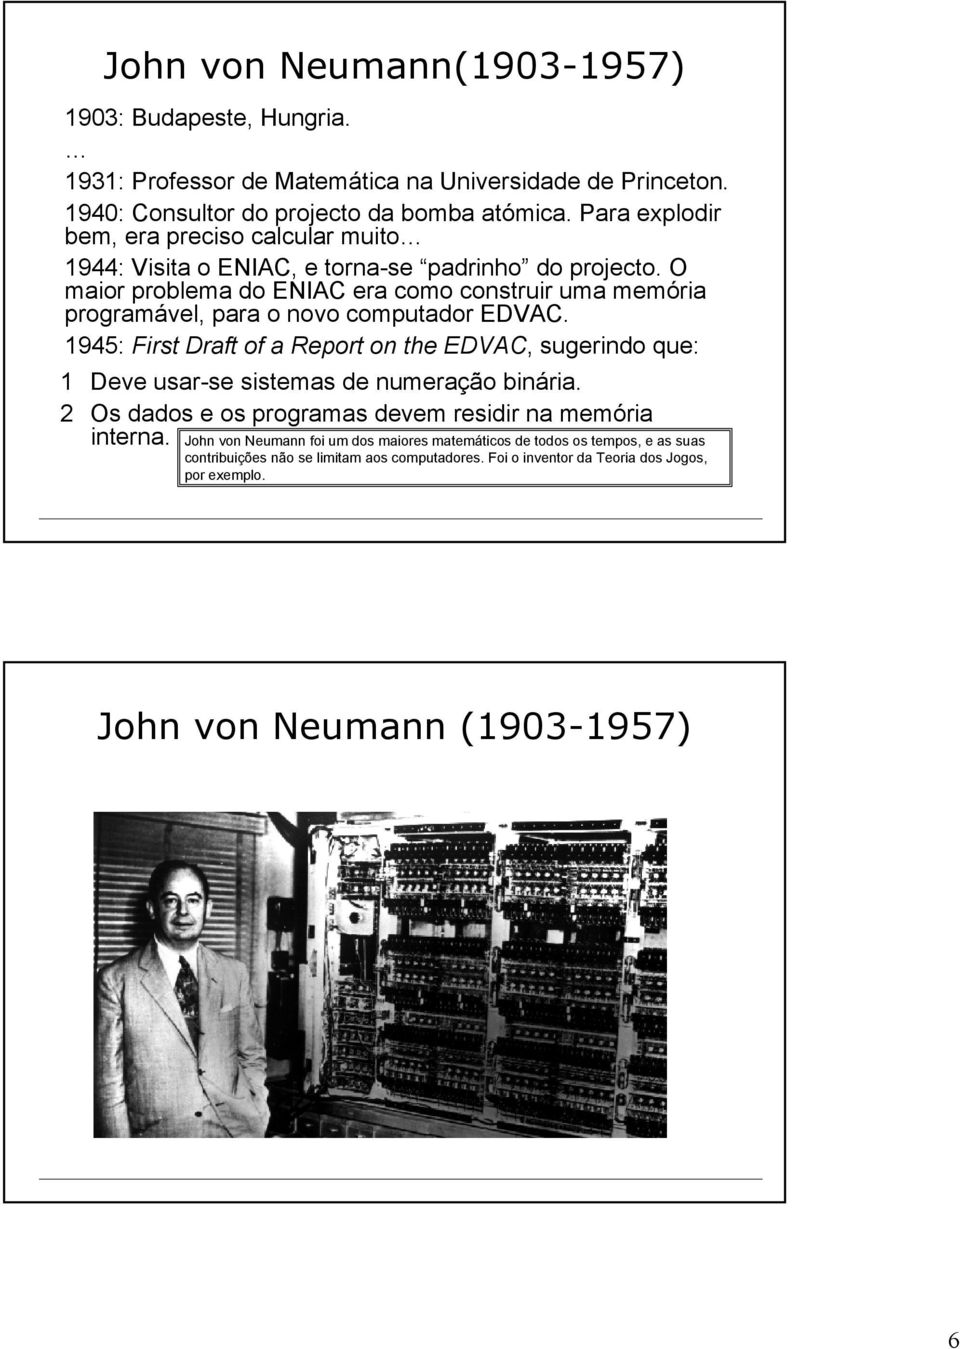 O maior problema do ENIAC era como construir uma memória programável, para o novo computador EDVAC.